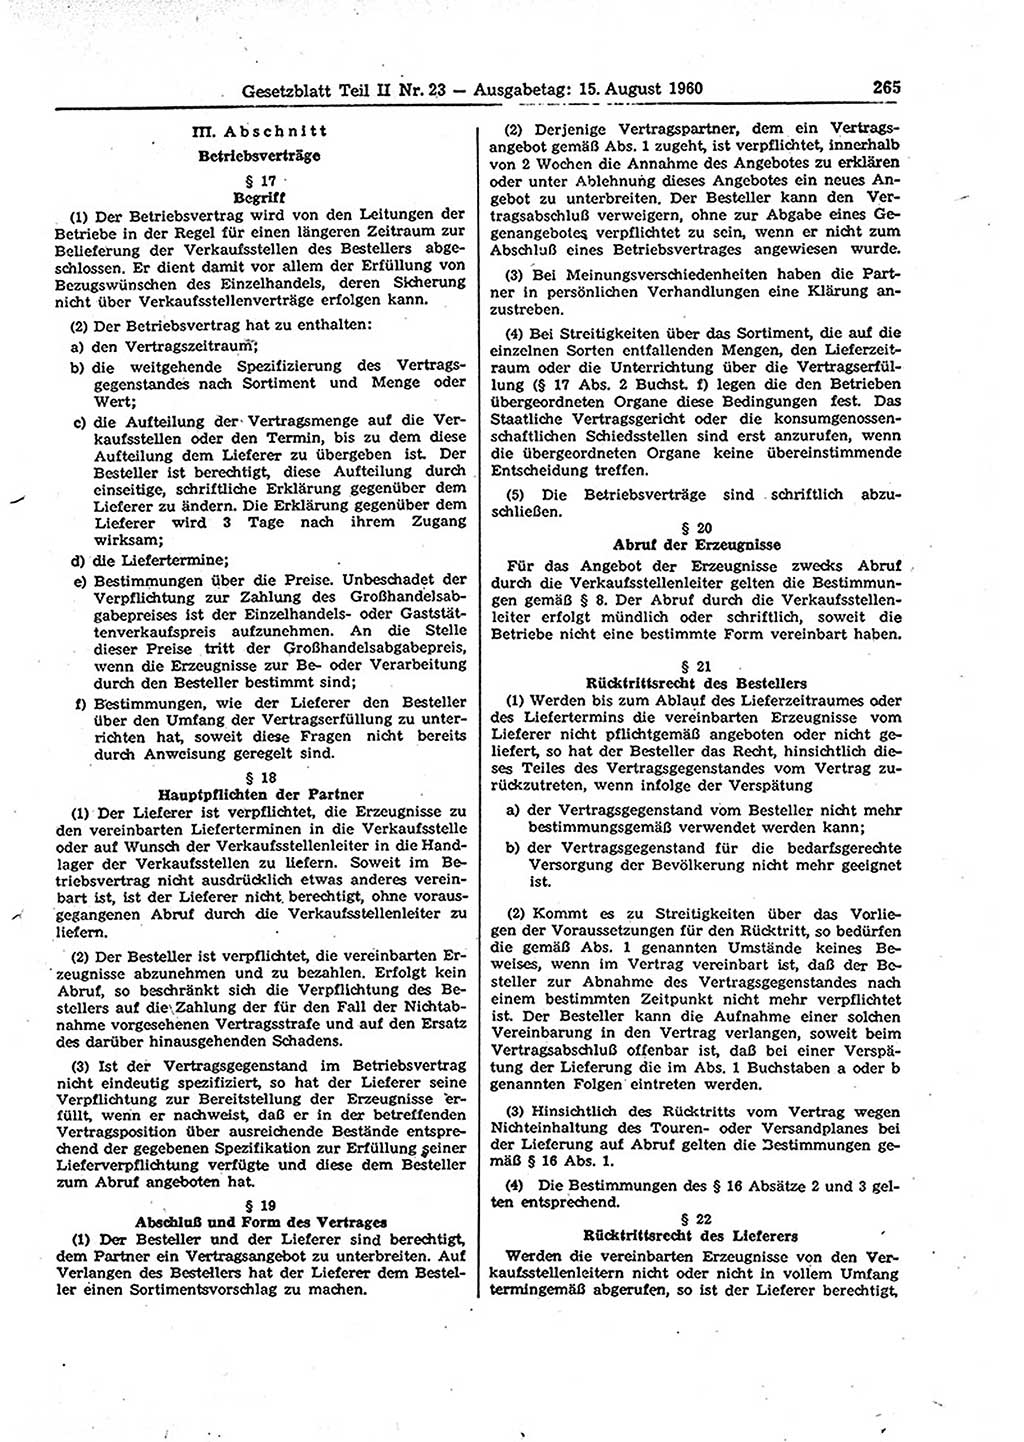 Gesetzblatt (GBl.) der Deutschen Demokratischen Republik (DDR) Teil ⅠⅠ 1960, Seite 265 (GBl. DDR ⅠⅠ 1960, S. 265)